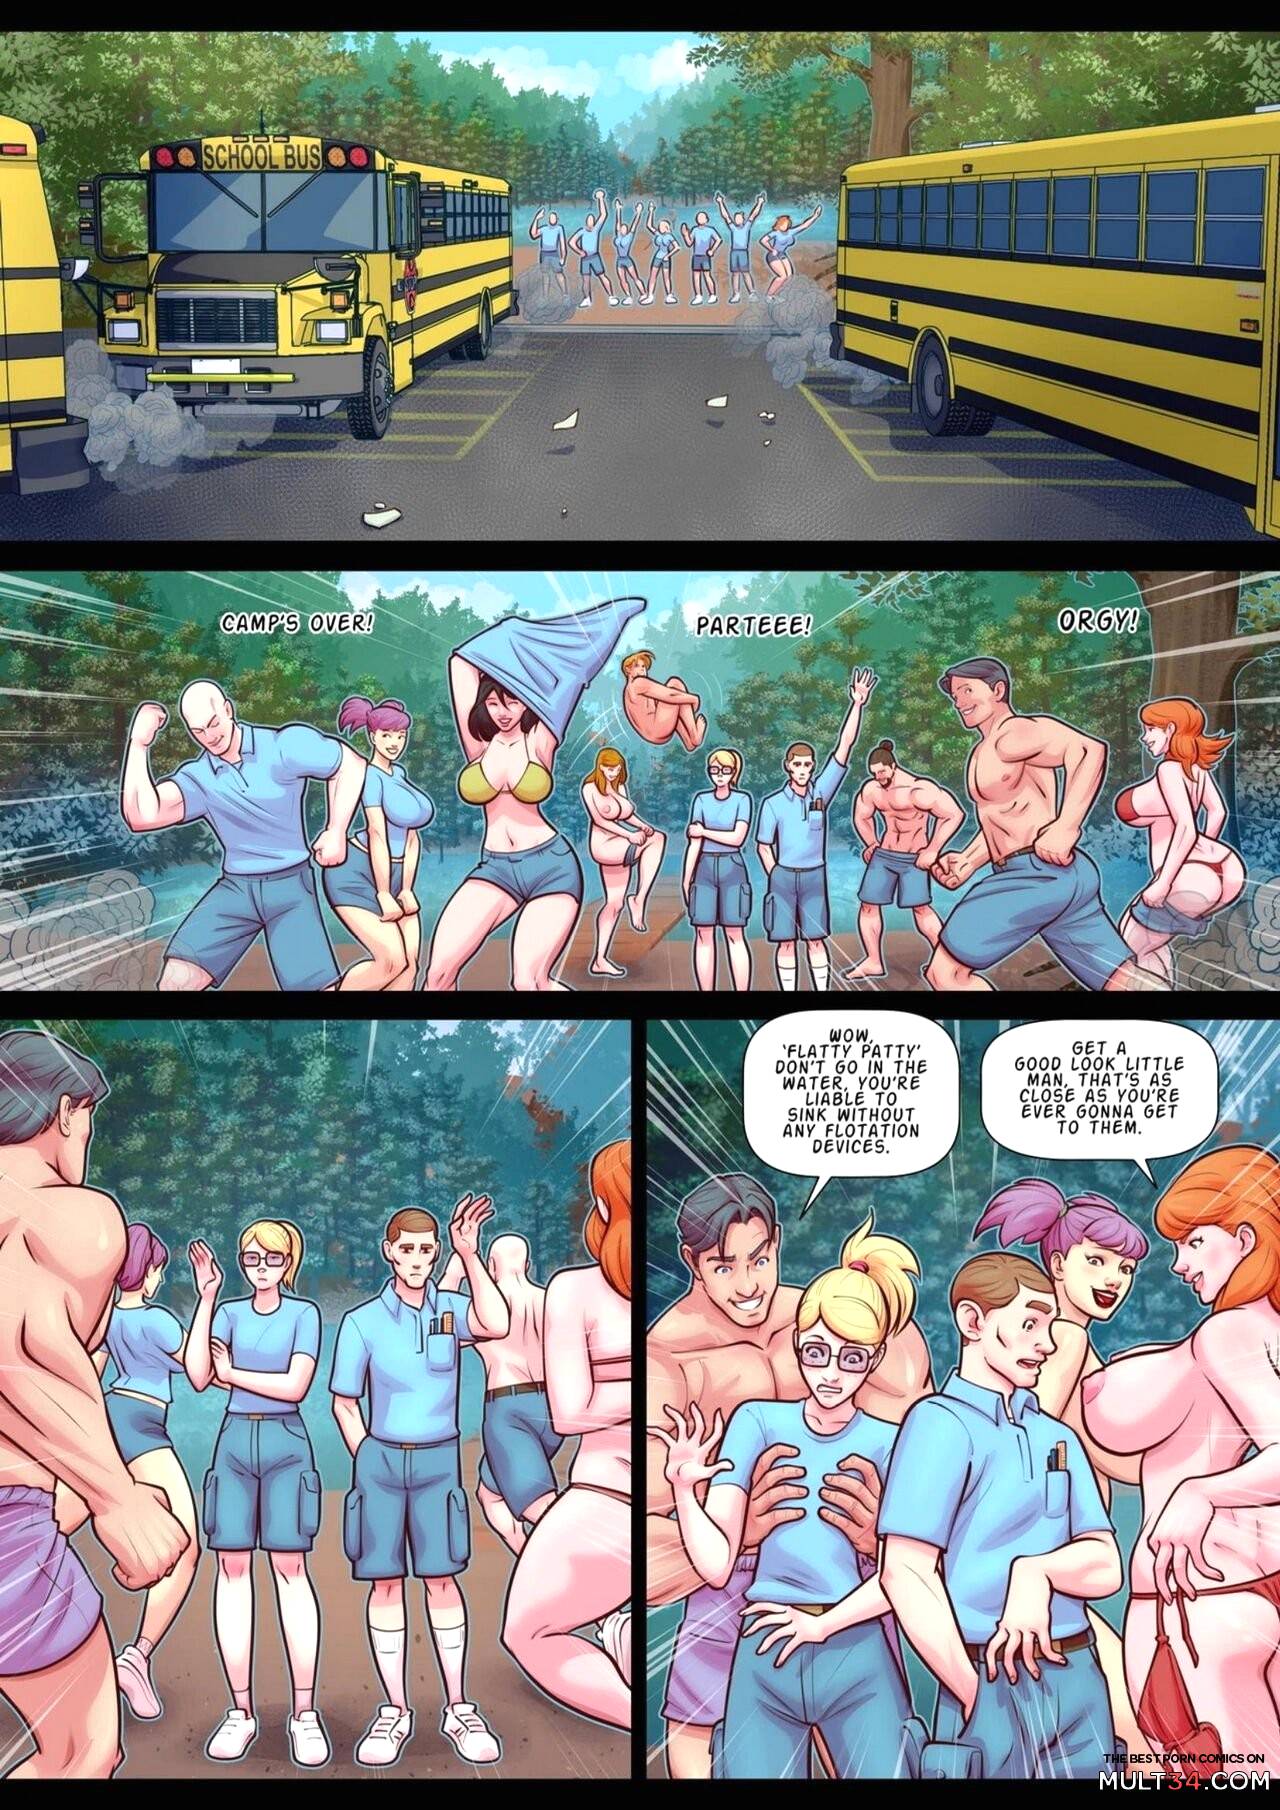 School Bus Sex Cartoon - Bigness Camp porn comic - the best cartoon porn comics, Rule 34 | MULT34